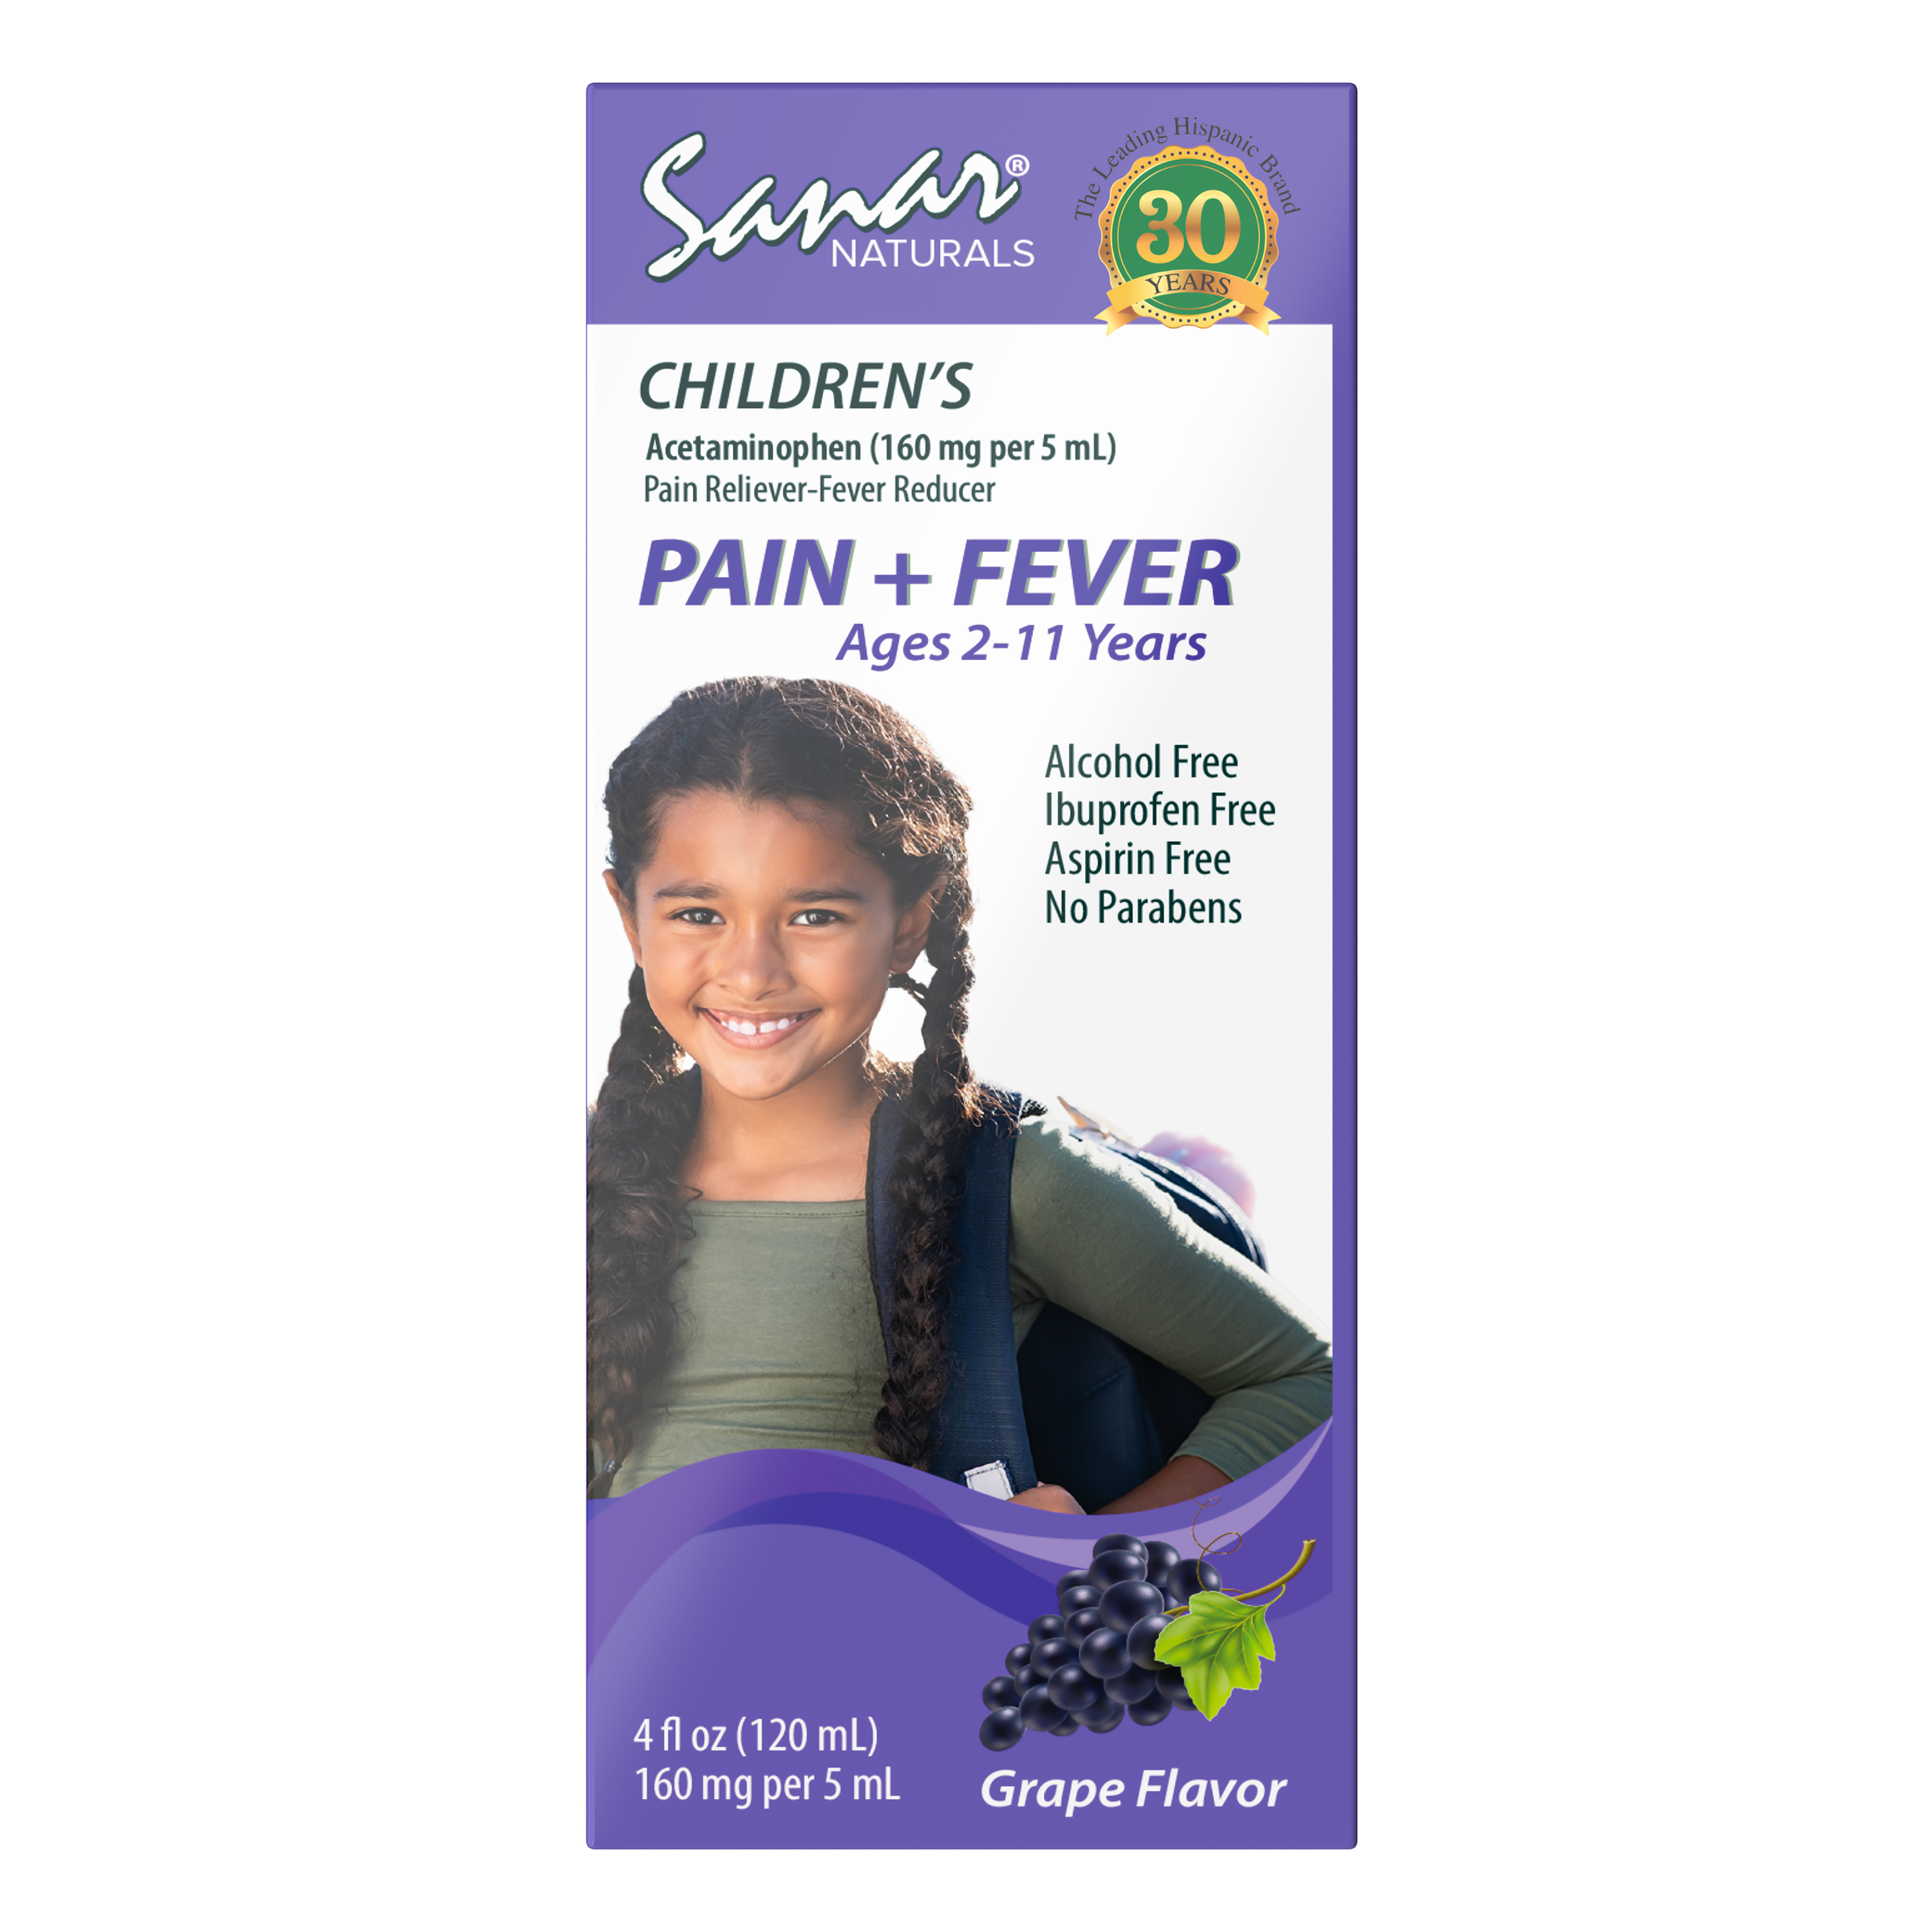 Children's Acetaminophen Pain Reliever, 4 fl oz